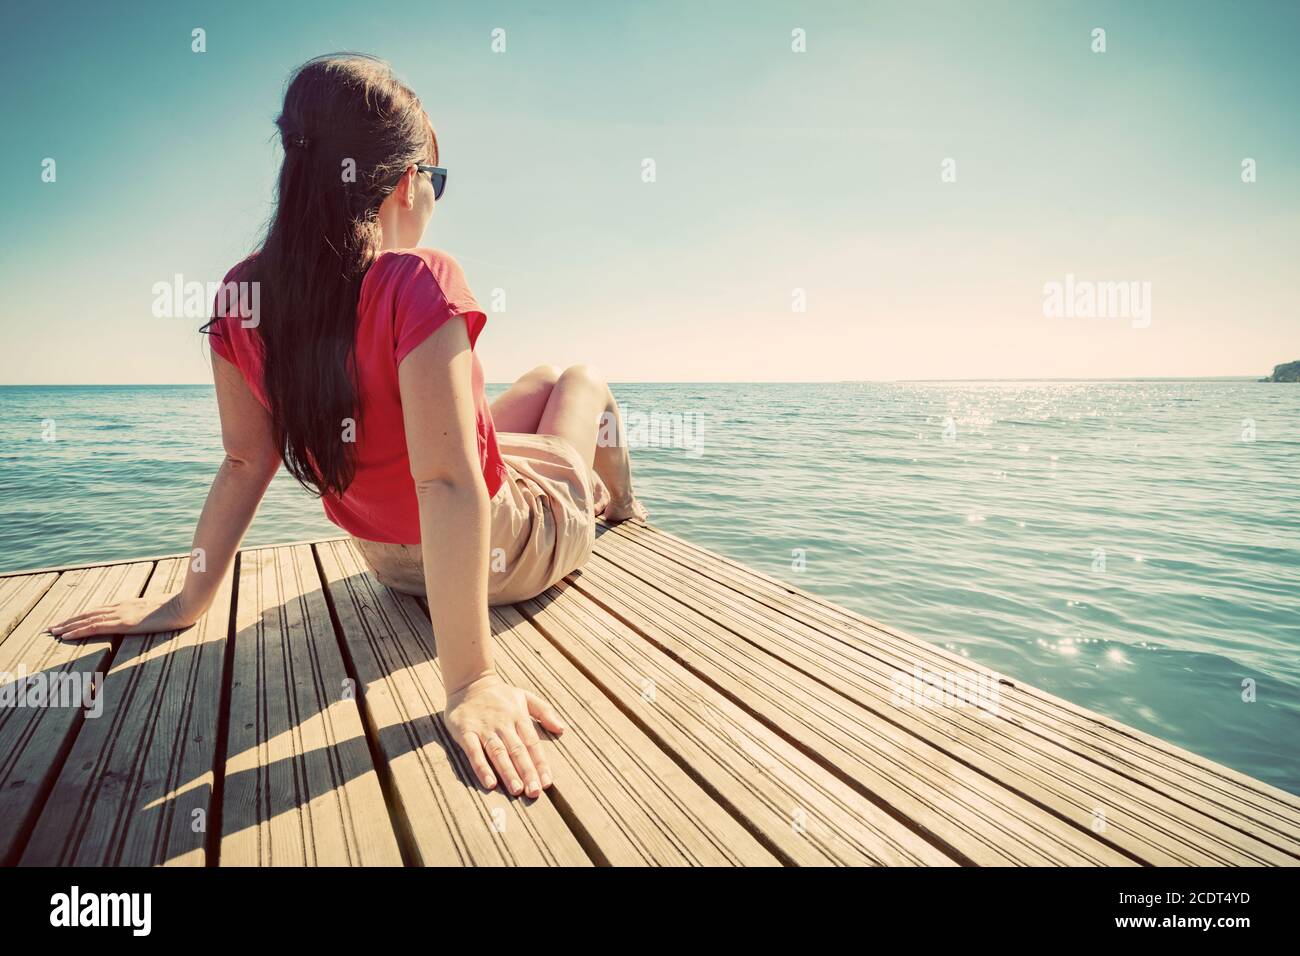 Mujer joven descansando en el embarcadero mirando el mar tranquilo en el soleado día de verano. Foto de stock